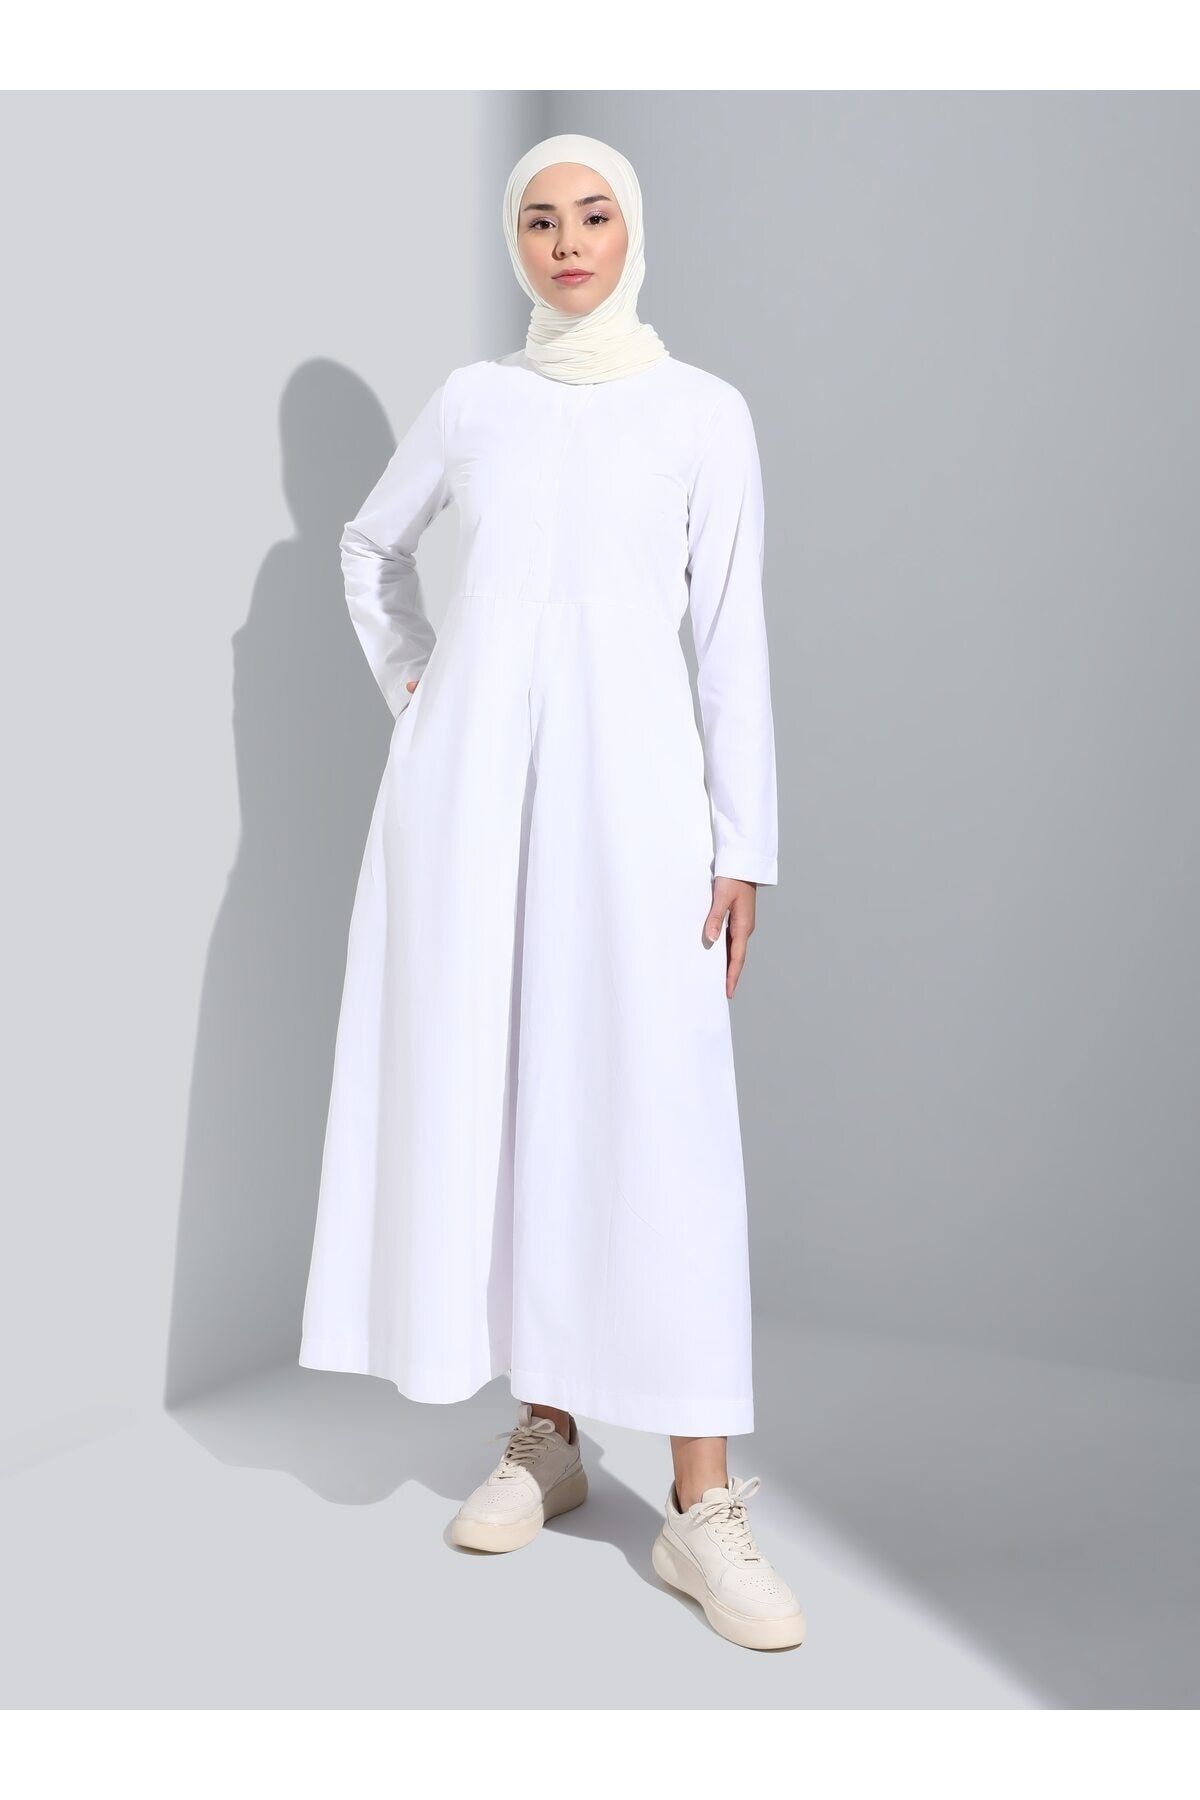 Refka Gizli Düğme Poplin Detaylı Tesettür Elbise - Off White - Refka Basic